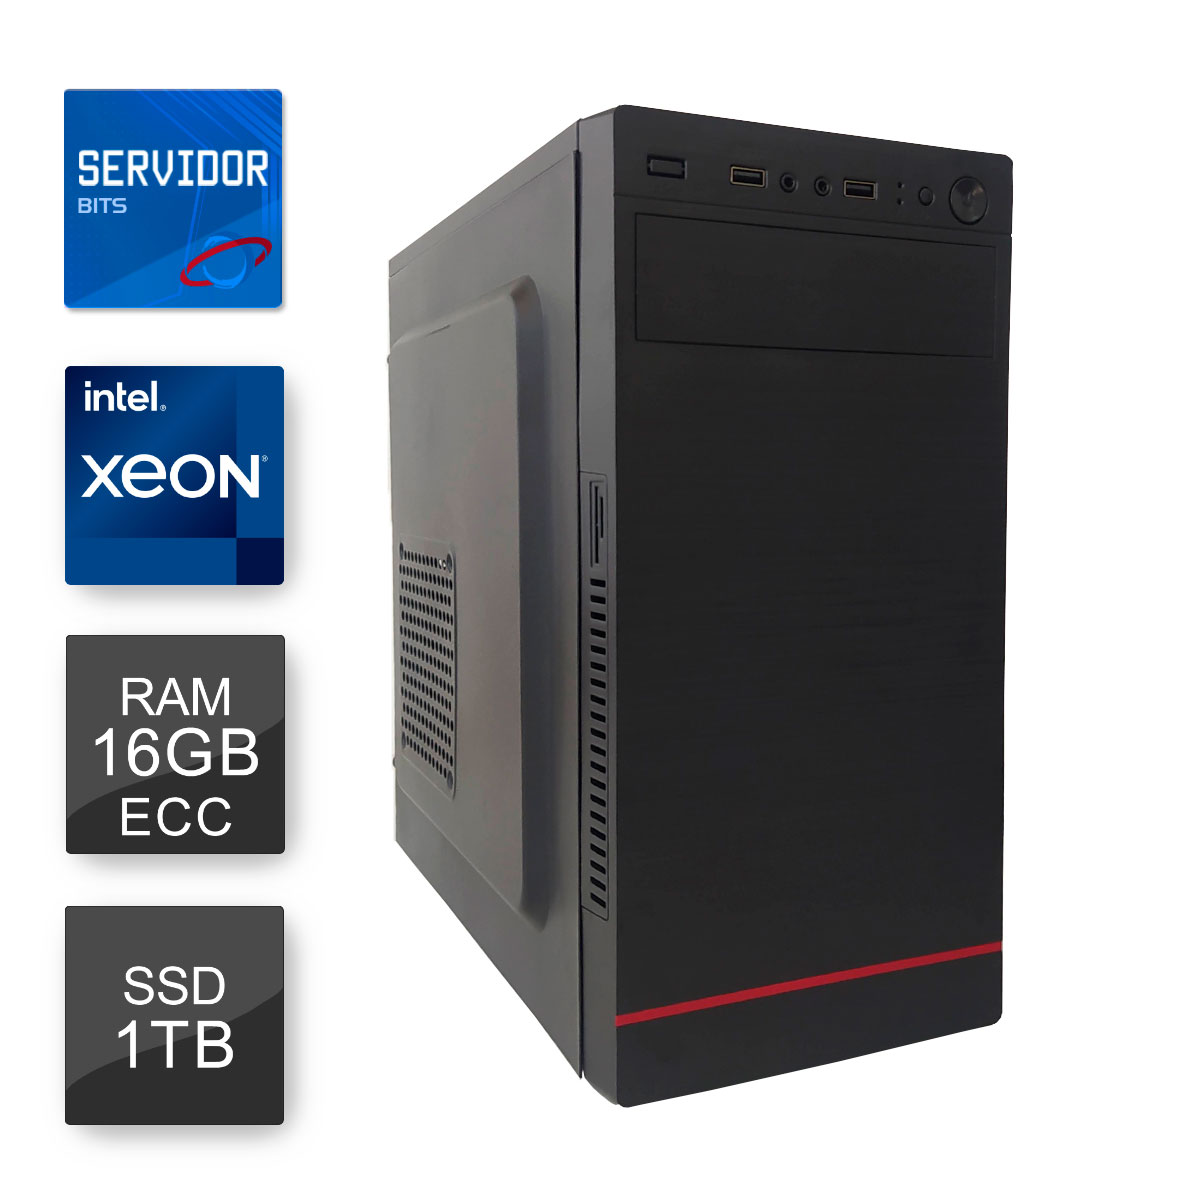 Servidor Bits - Intel® Xeon E3 1220 V2, RAM 16GB ECC, SSD 1TB